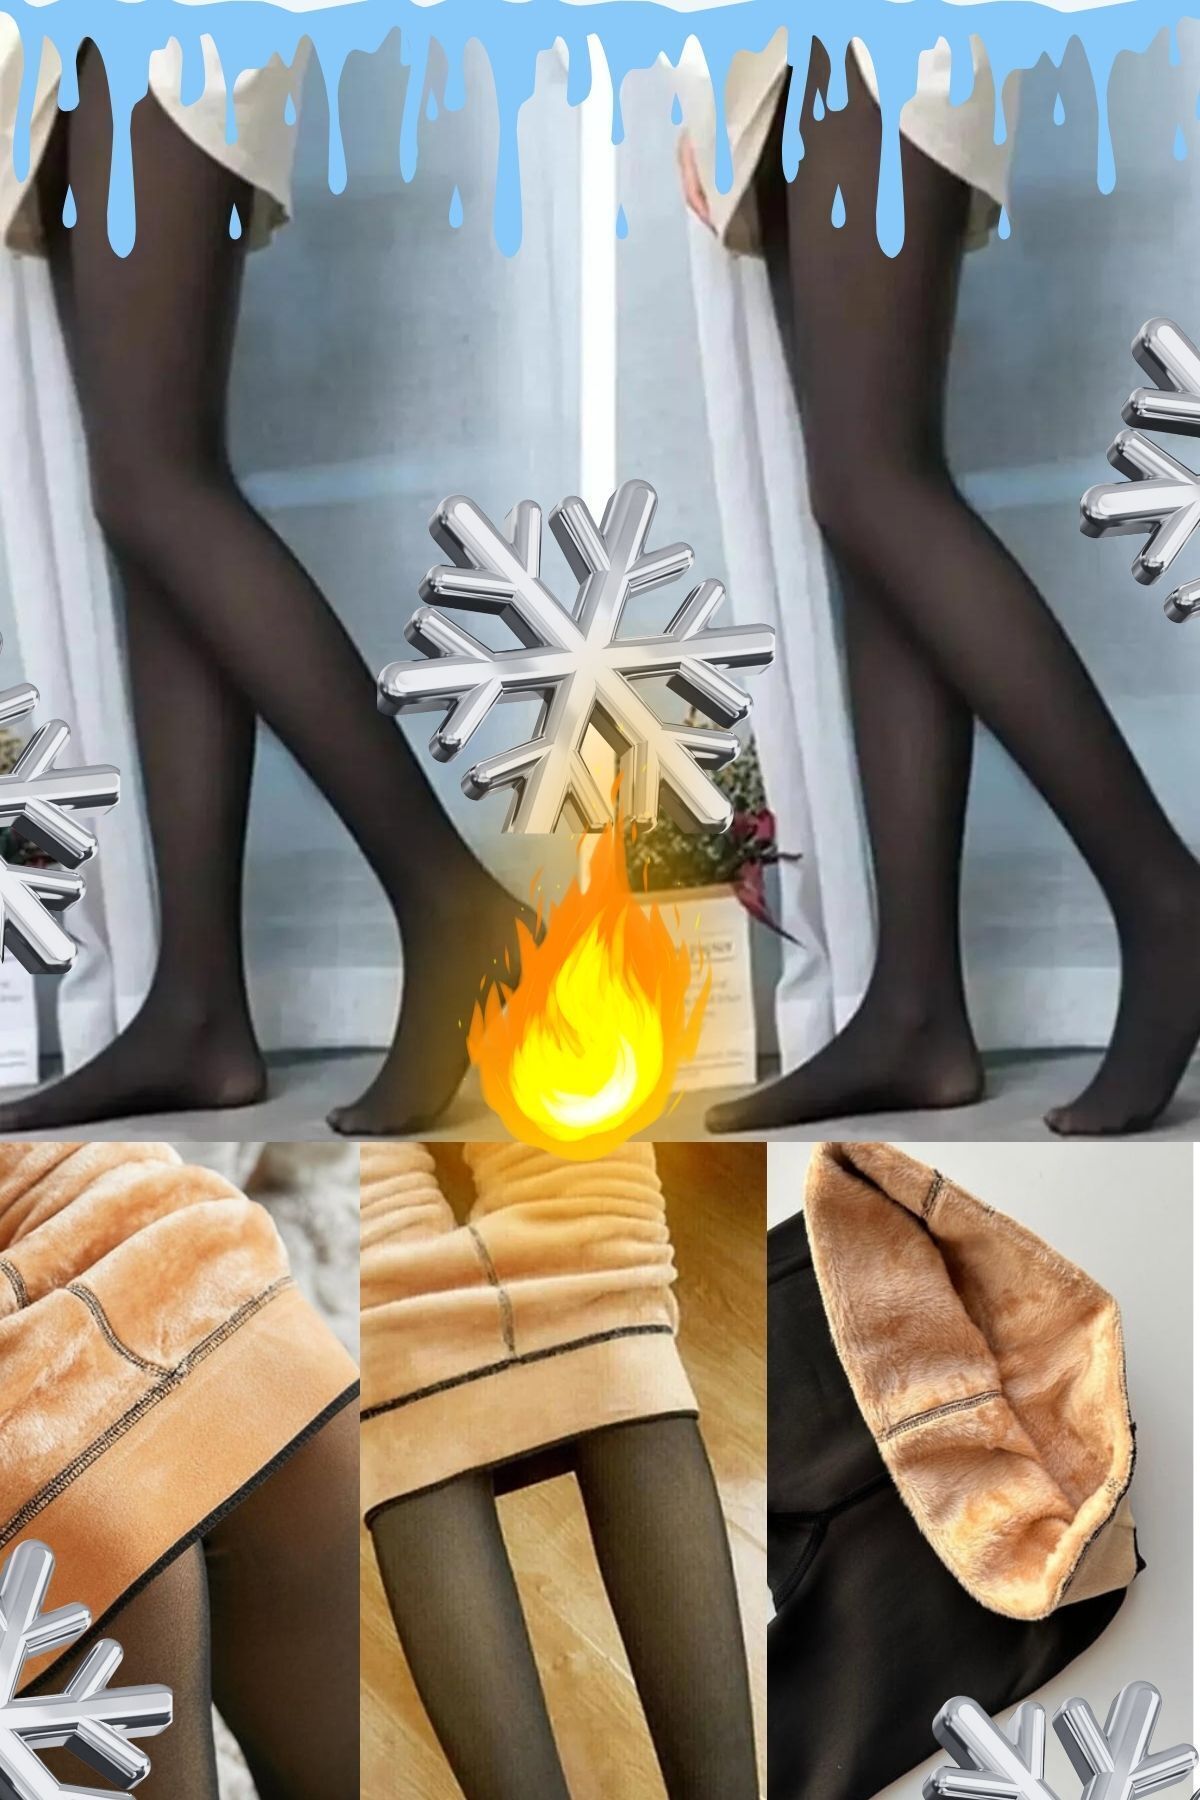 mrmpro Kadın Ten Peluş Çorap Termal Özellikli Üşümeye Son Bacakları I?nce Gösterir